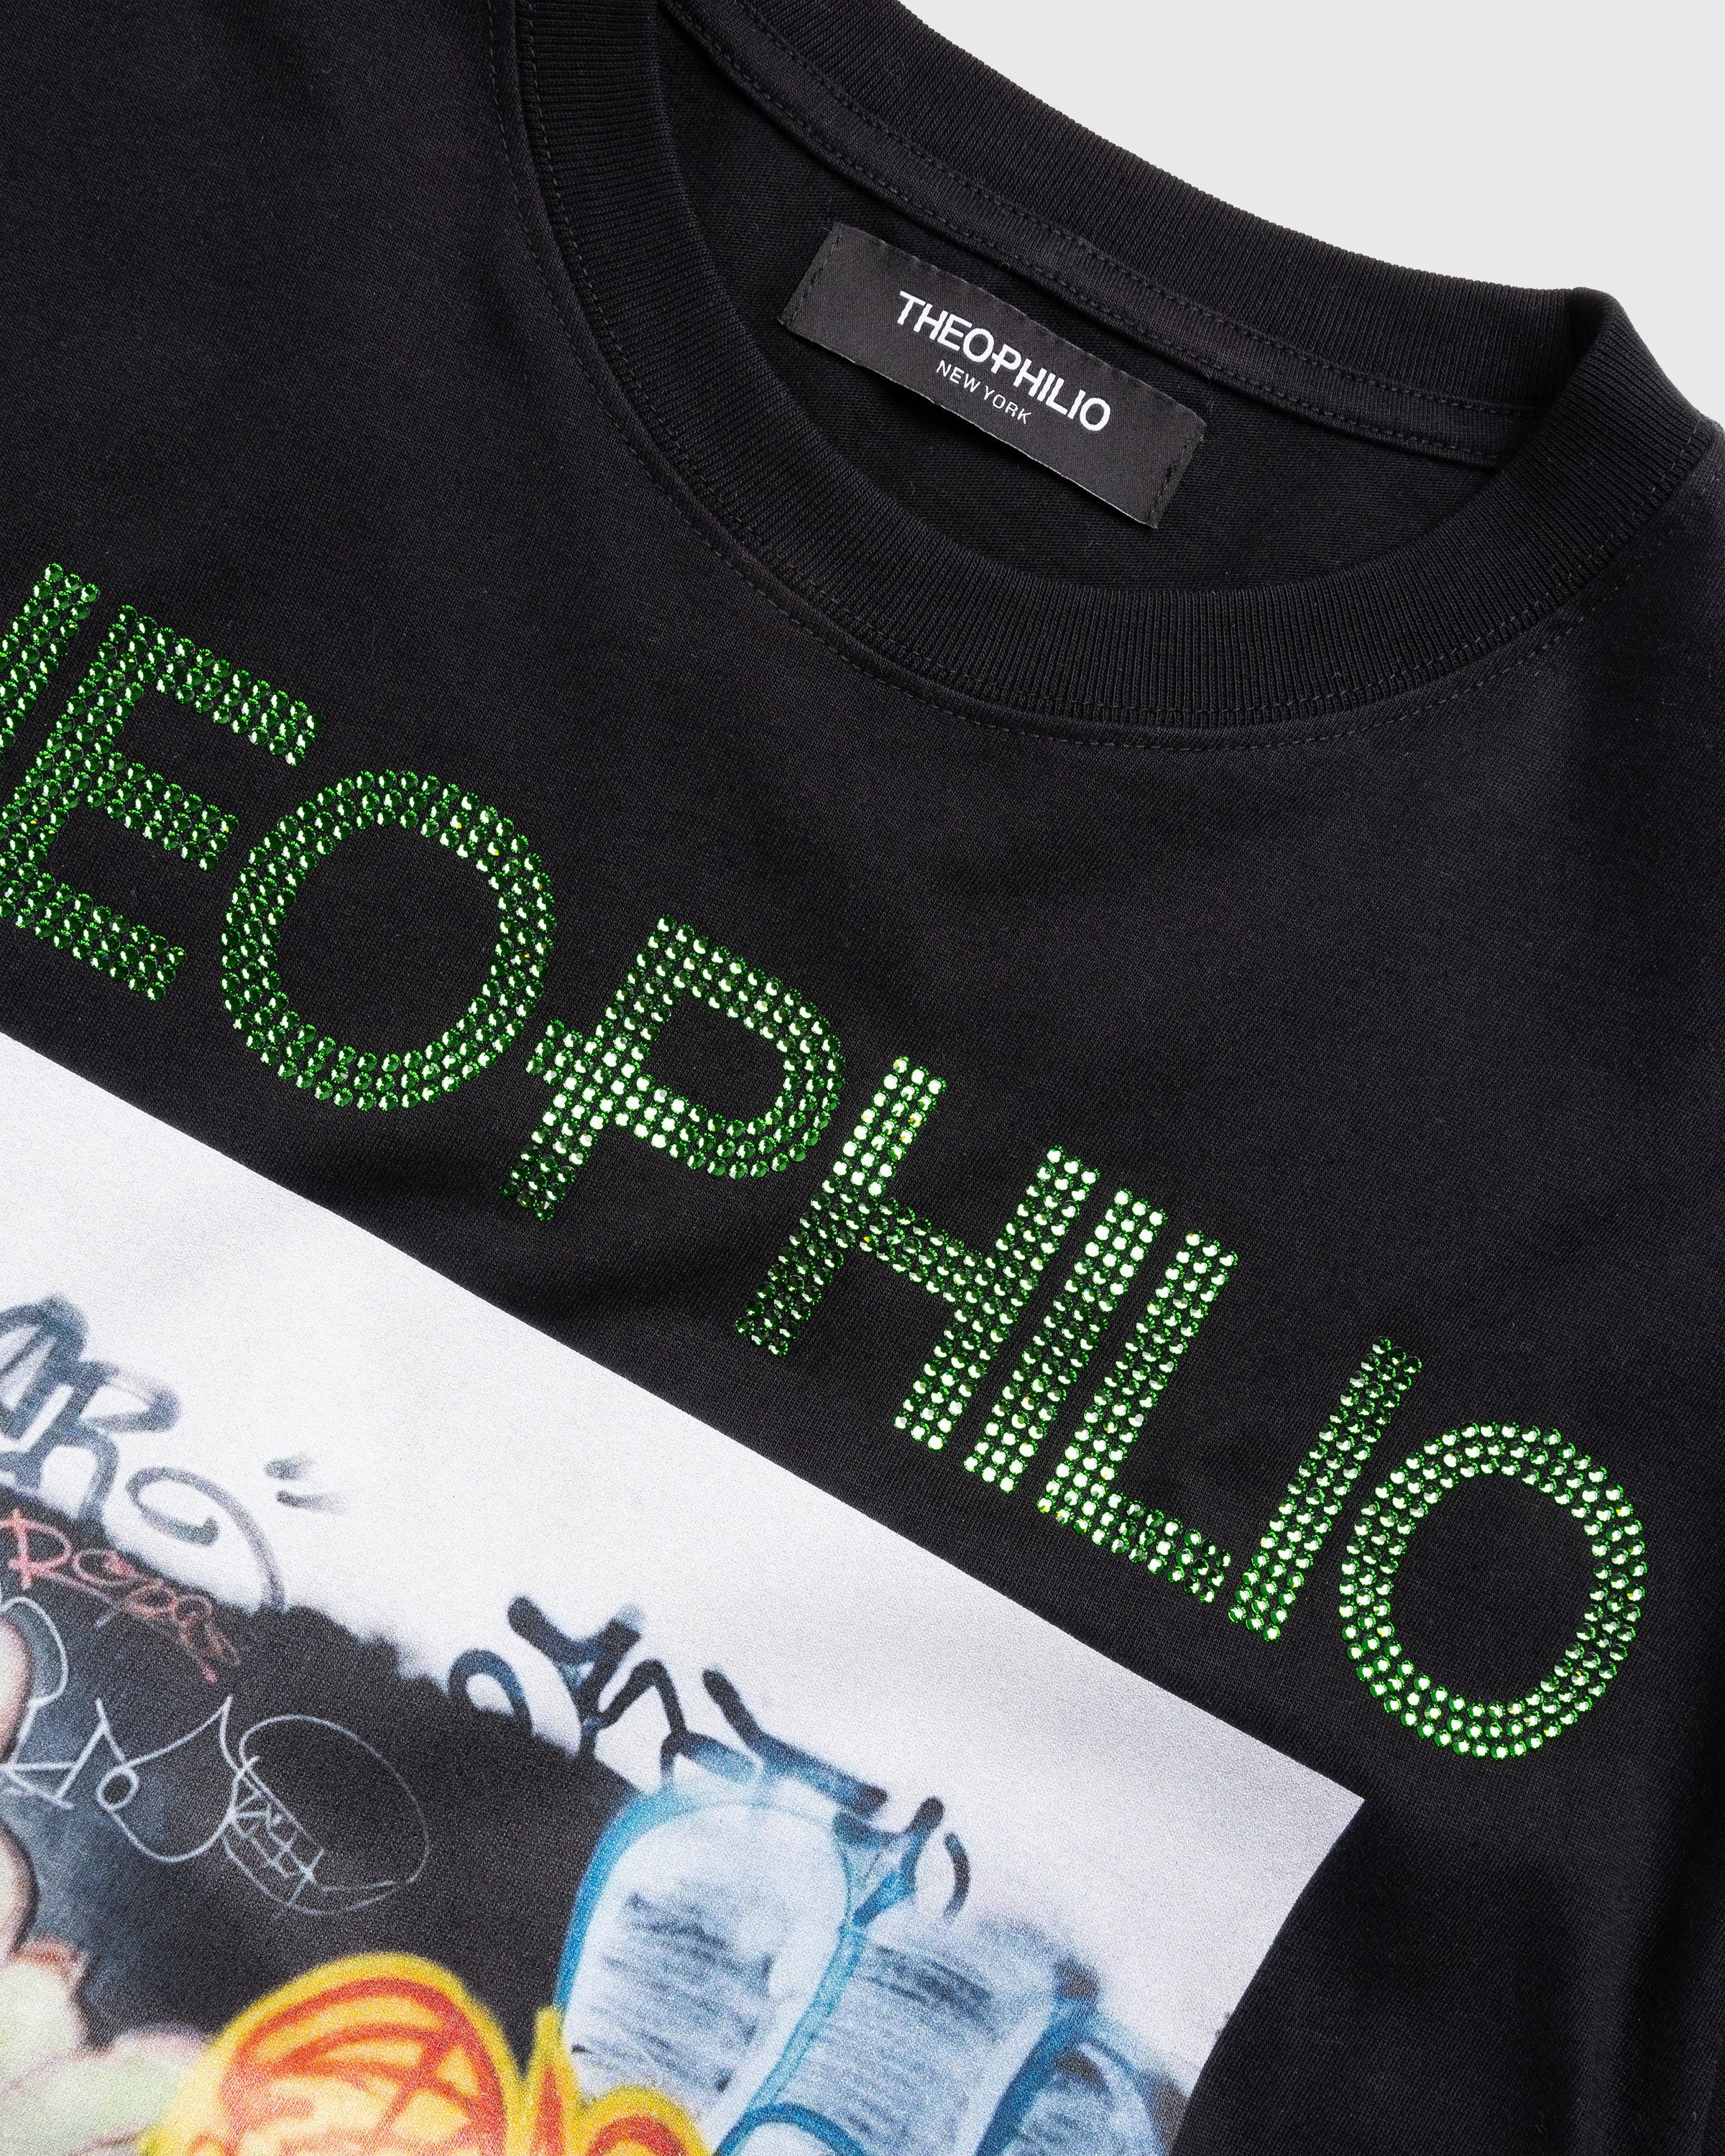 Theophilio x Highsnobiety - Black T-Shirt - Clothing - Black - Image 6